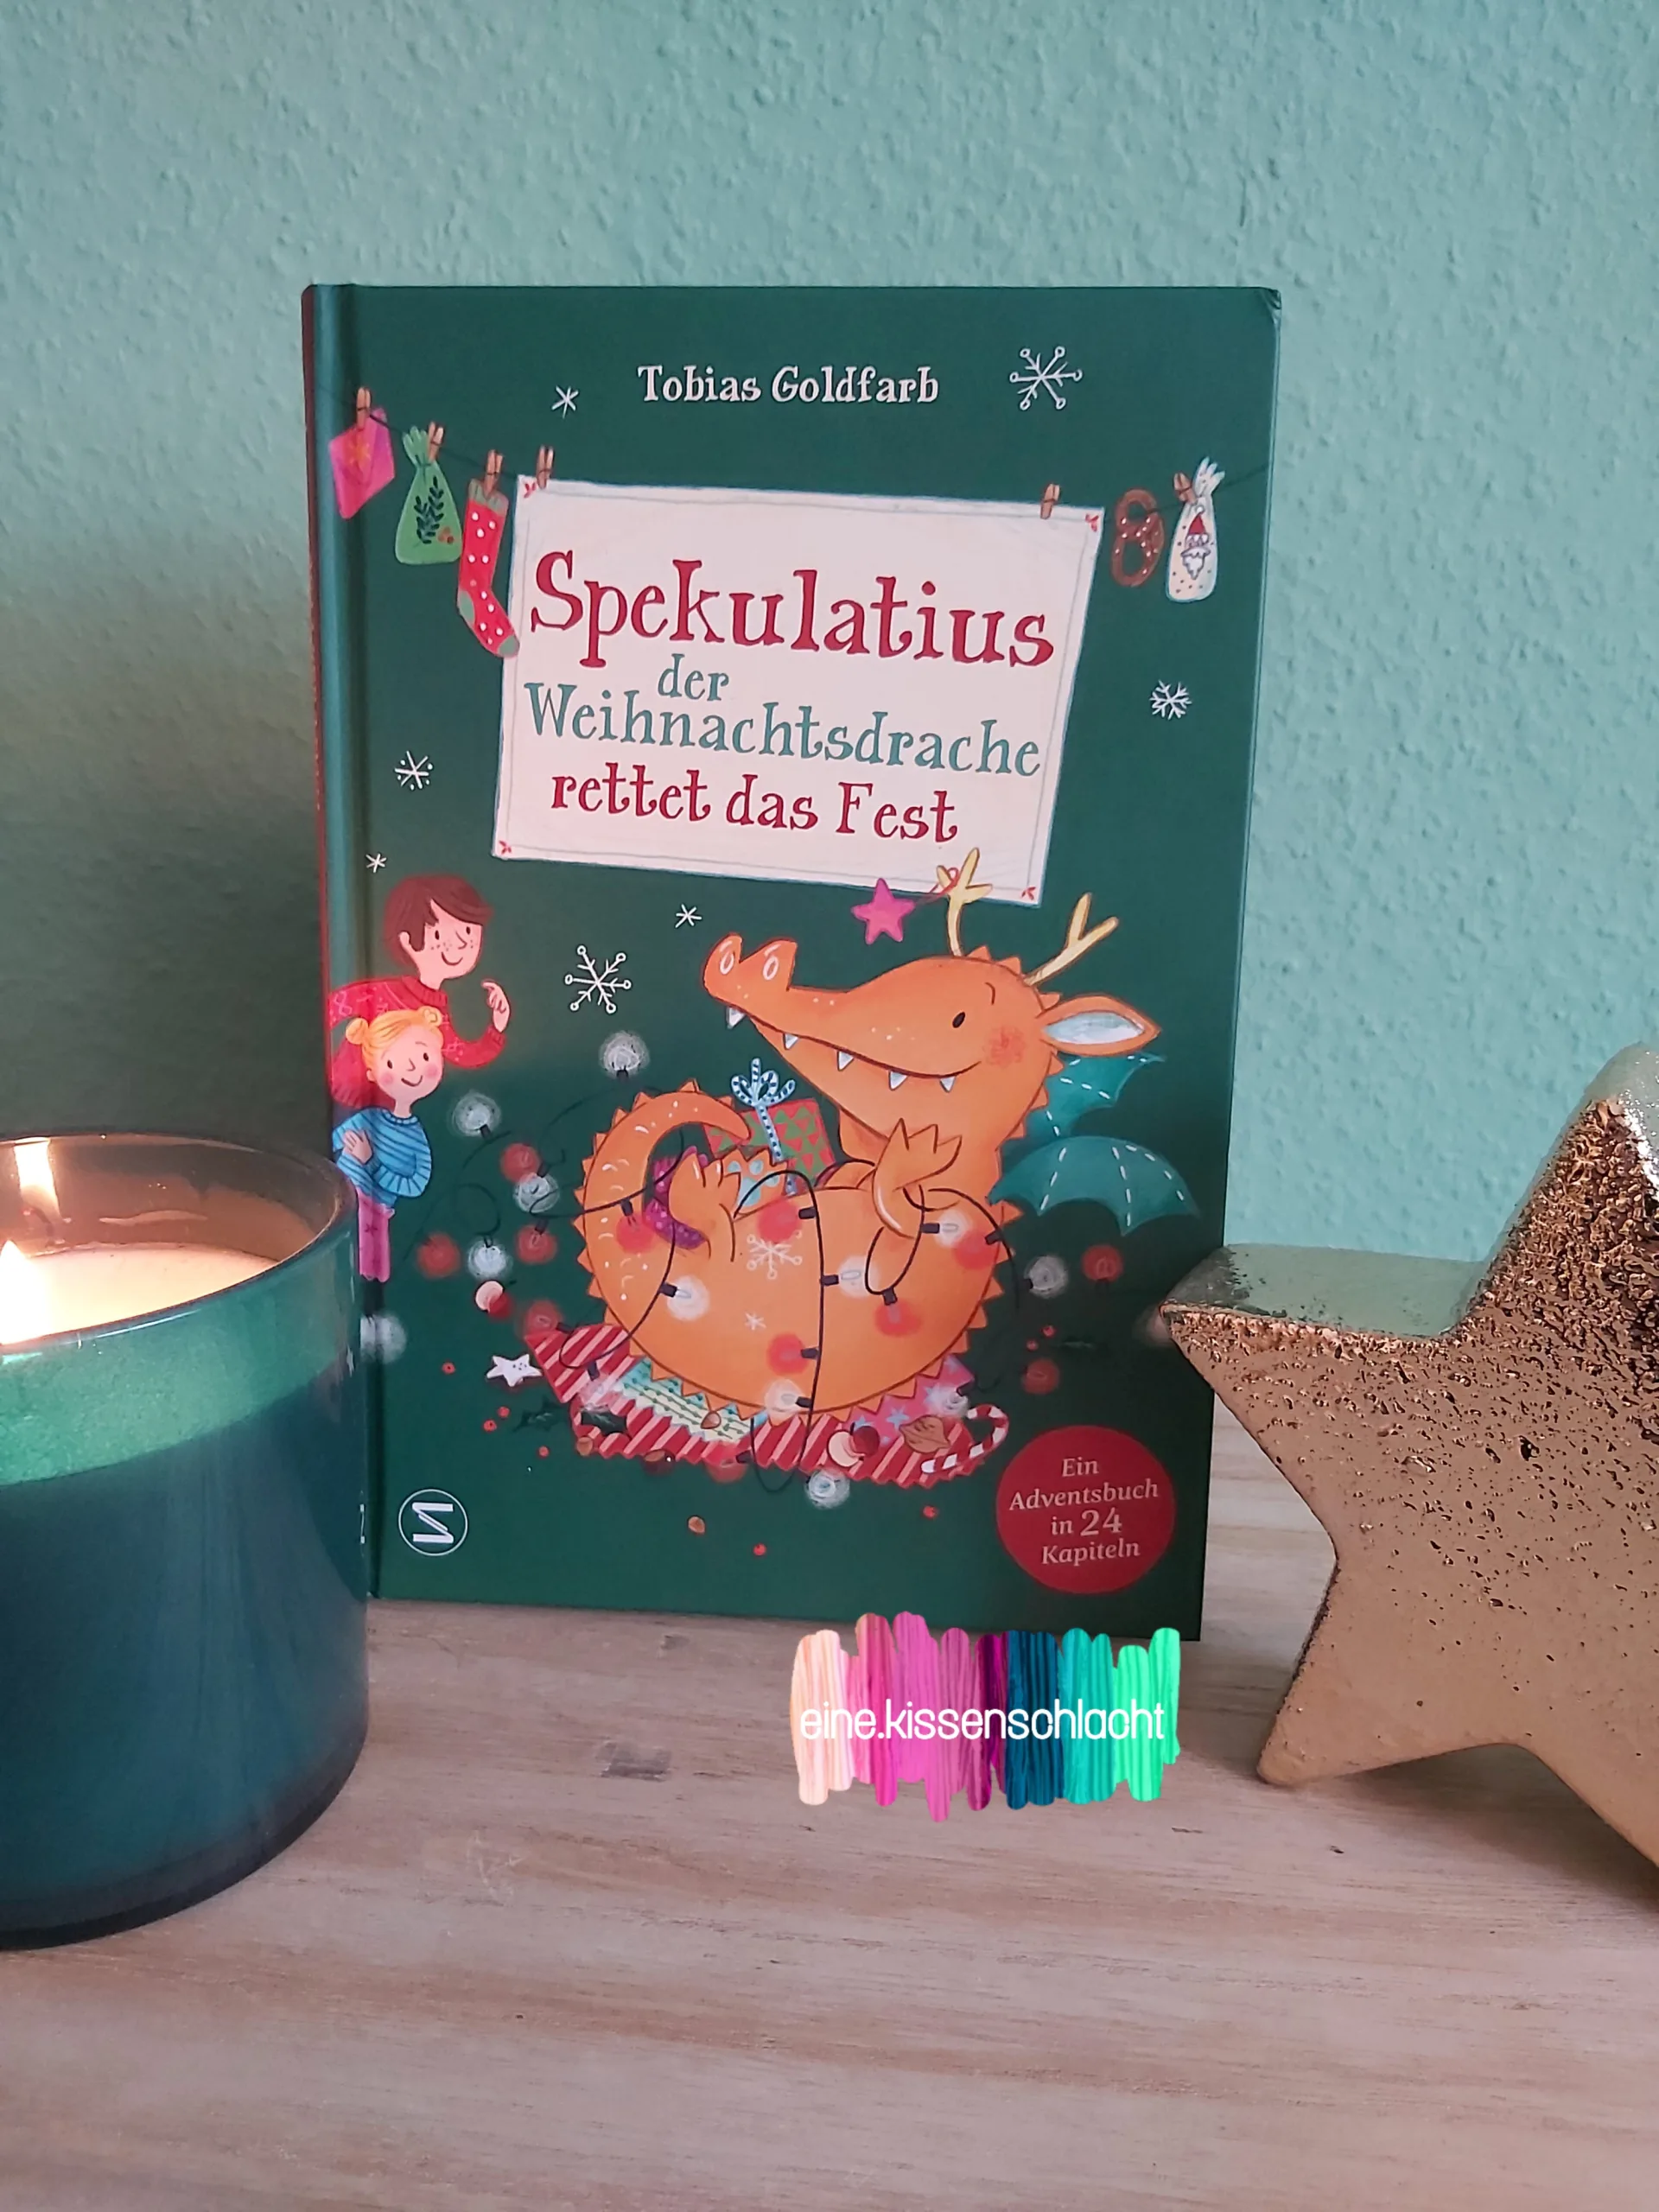 You are currently viewing Spekulatius der Weihnachtsdrache rettet das Fest (Tobias Goldfarb)